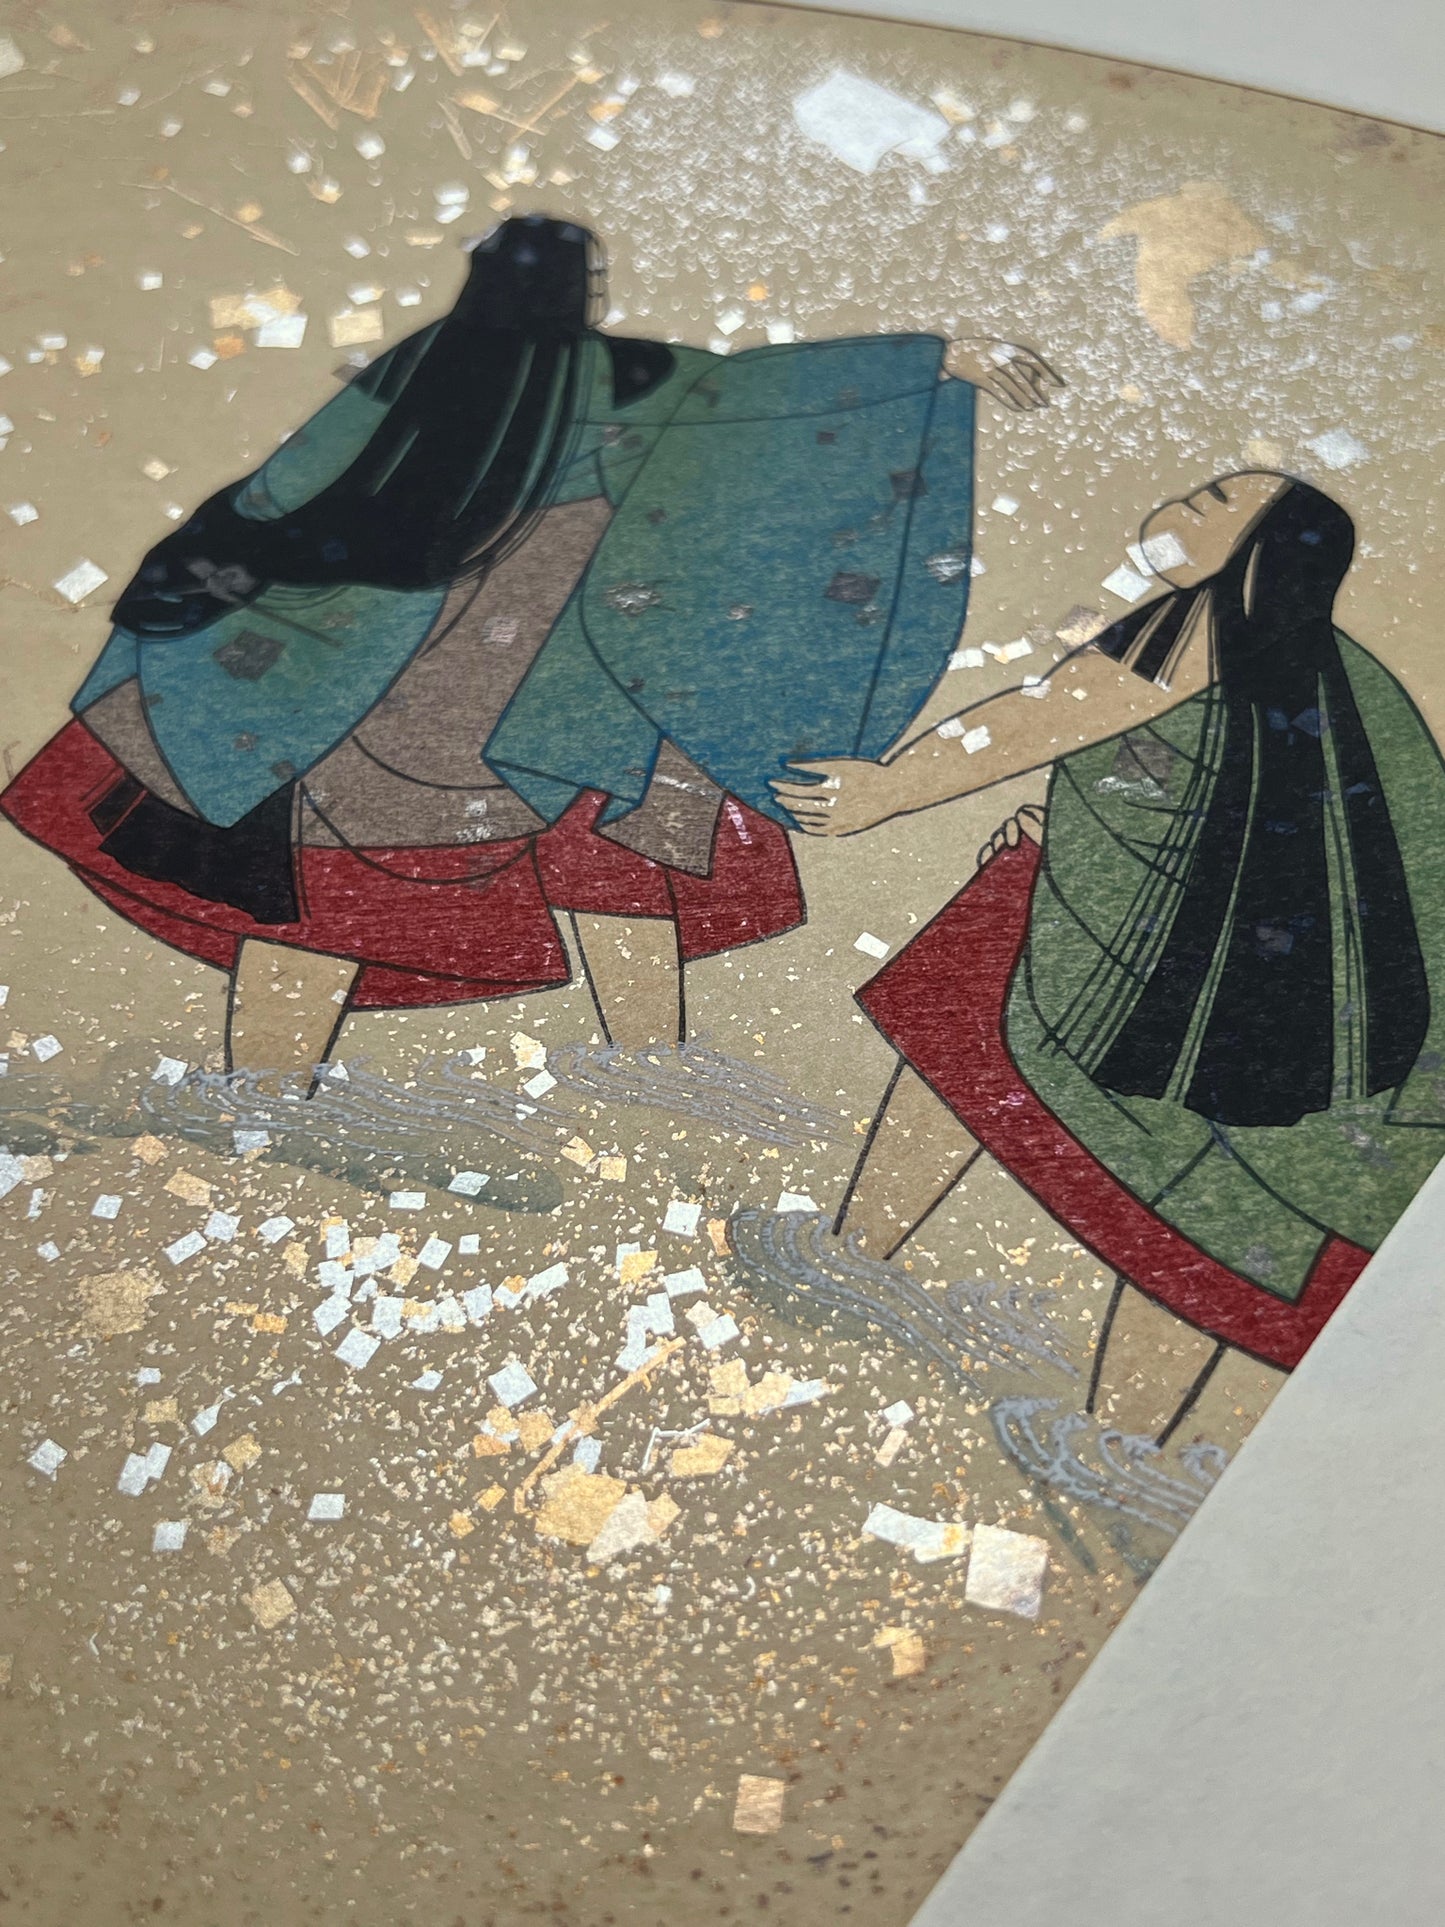 Estampe japonaise en forme d'éventail parsemée de fragments d'or et d'argent, détail des fragments scintillants dans l'eau de la rivière, femmes se baignant.